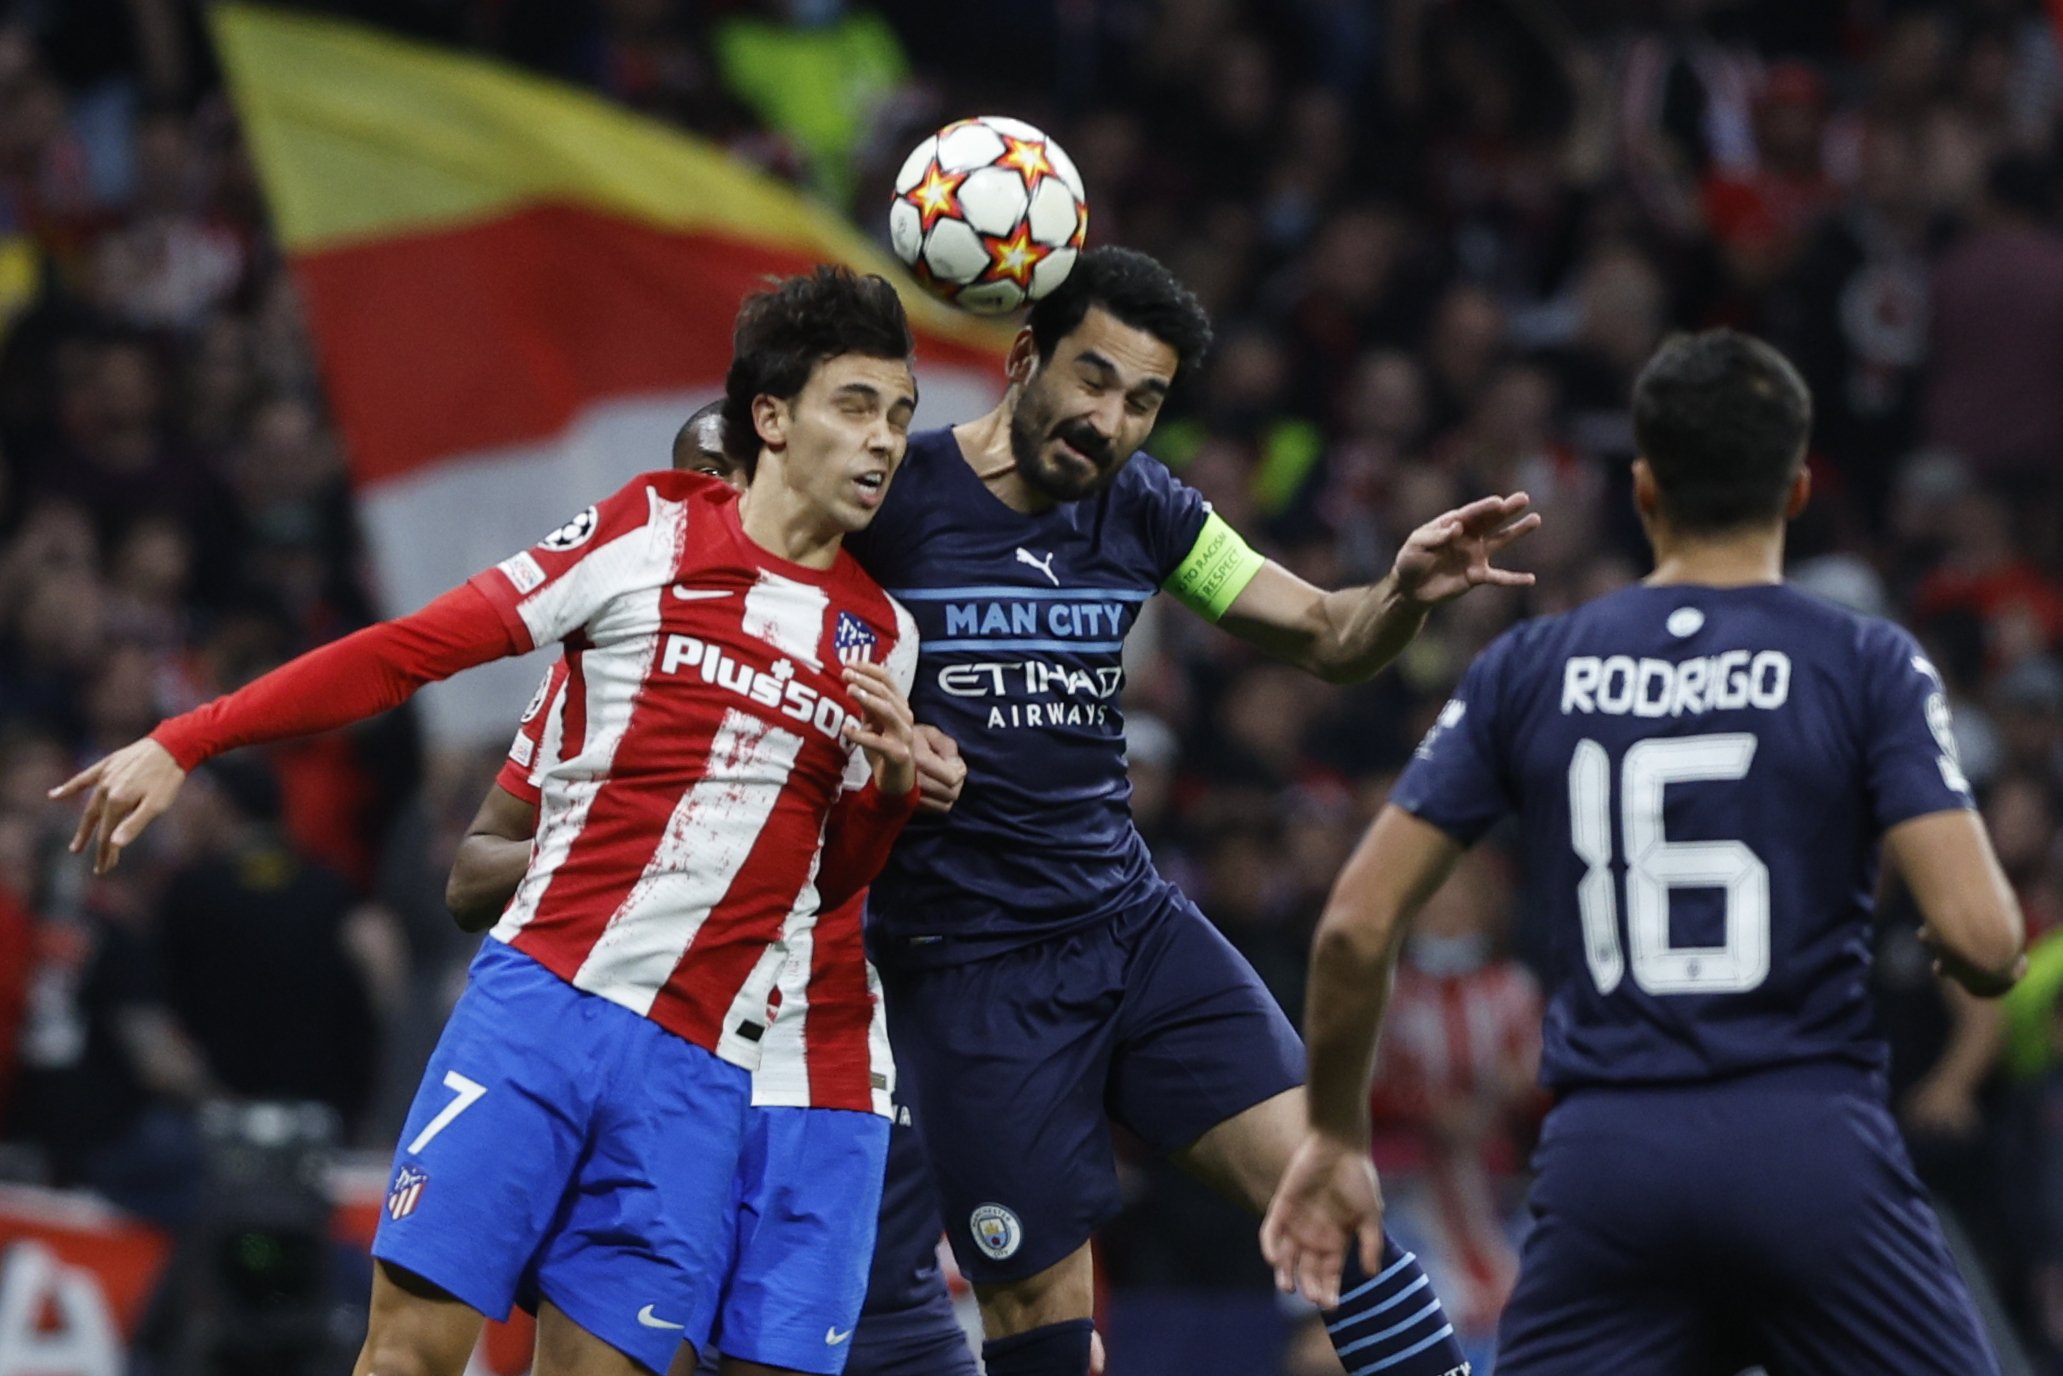 El Manchester City resiste contra el Atlético y Guardiola jugará las semis de Champions contra el Madrid (0-0)